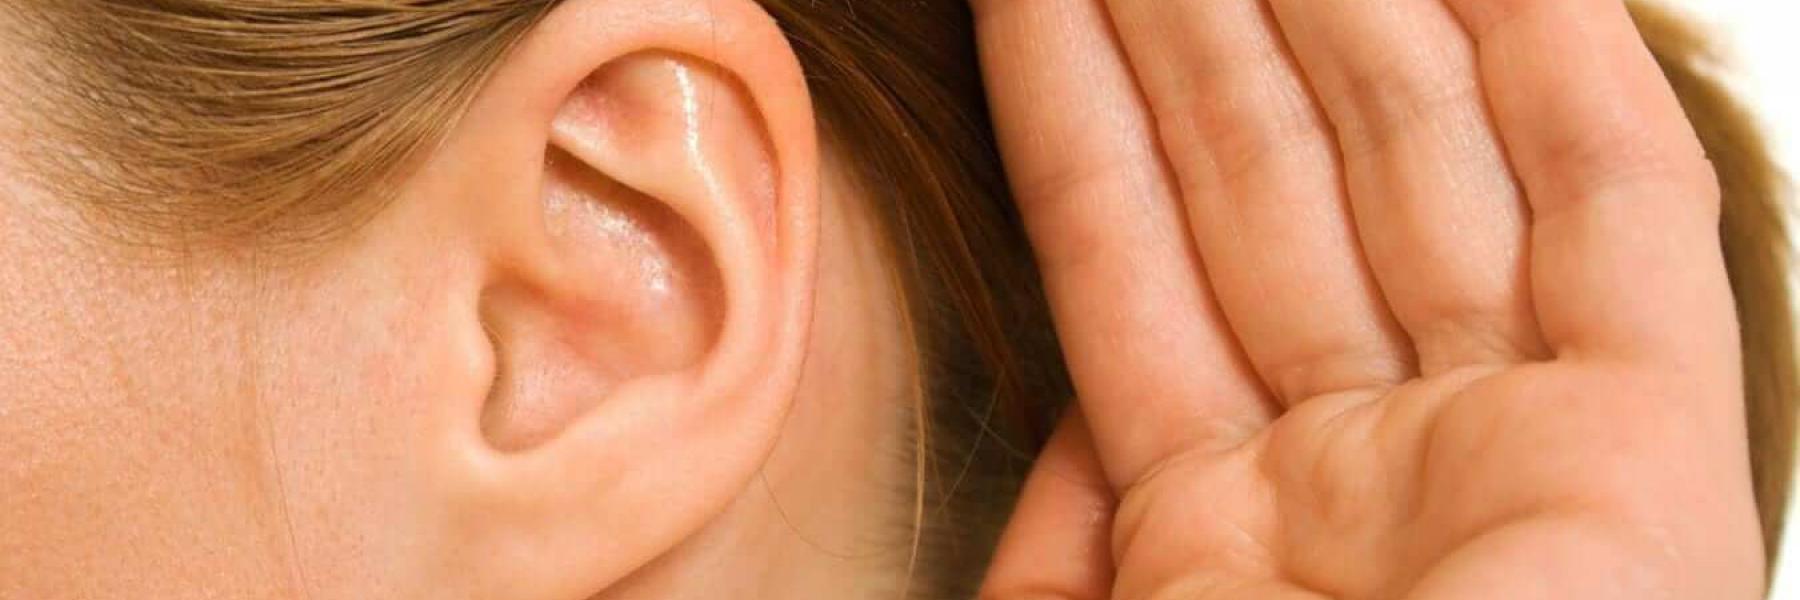 ضعاف السمع أكثر عرضة لتلك الحالات الصحية الخطيرة